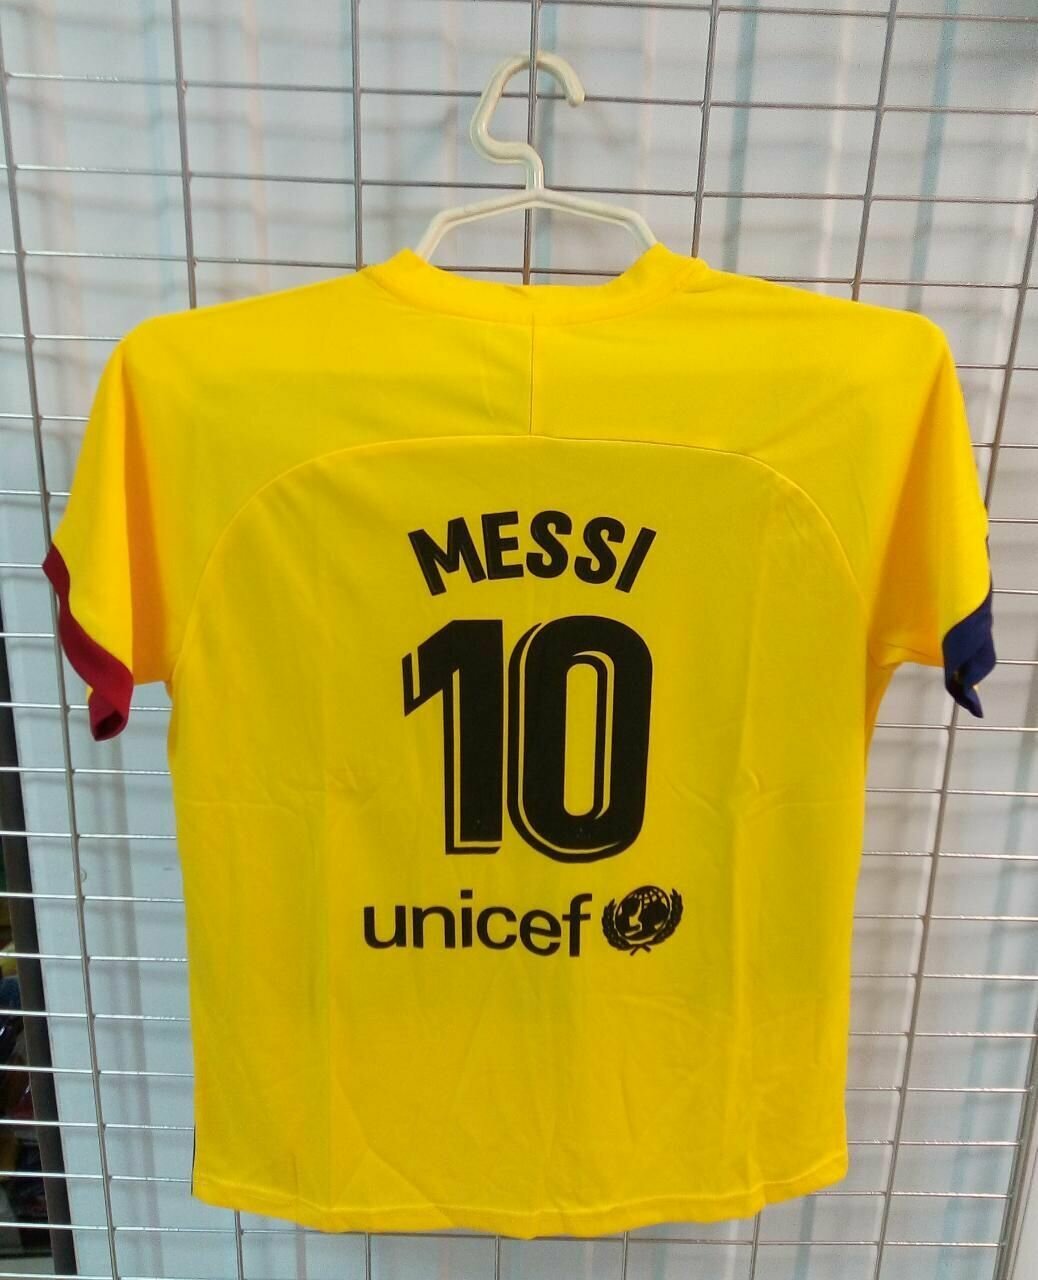 Месси размер 30 ( на 15-16 лет ) форма ( майка + шорты ) футбольного клуба Барселона ( Испания ) №30 MESSI желтая